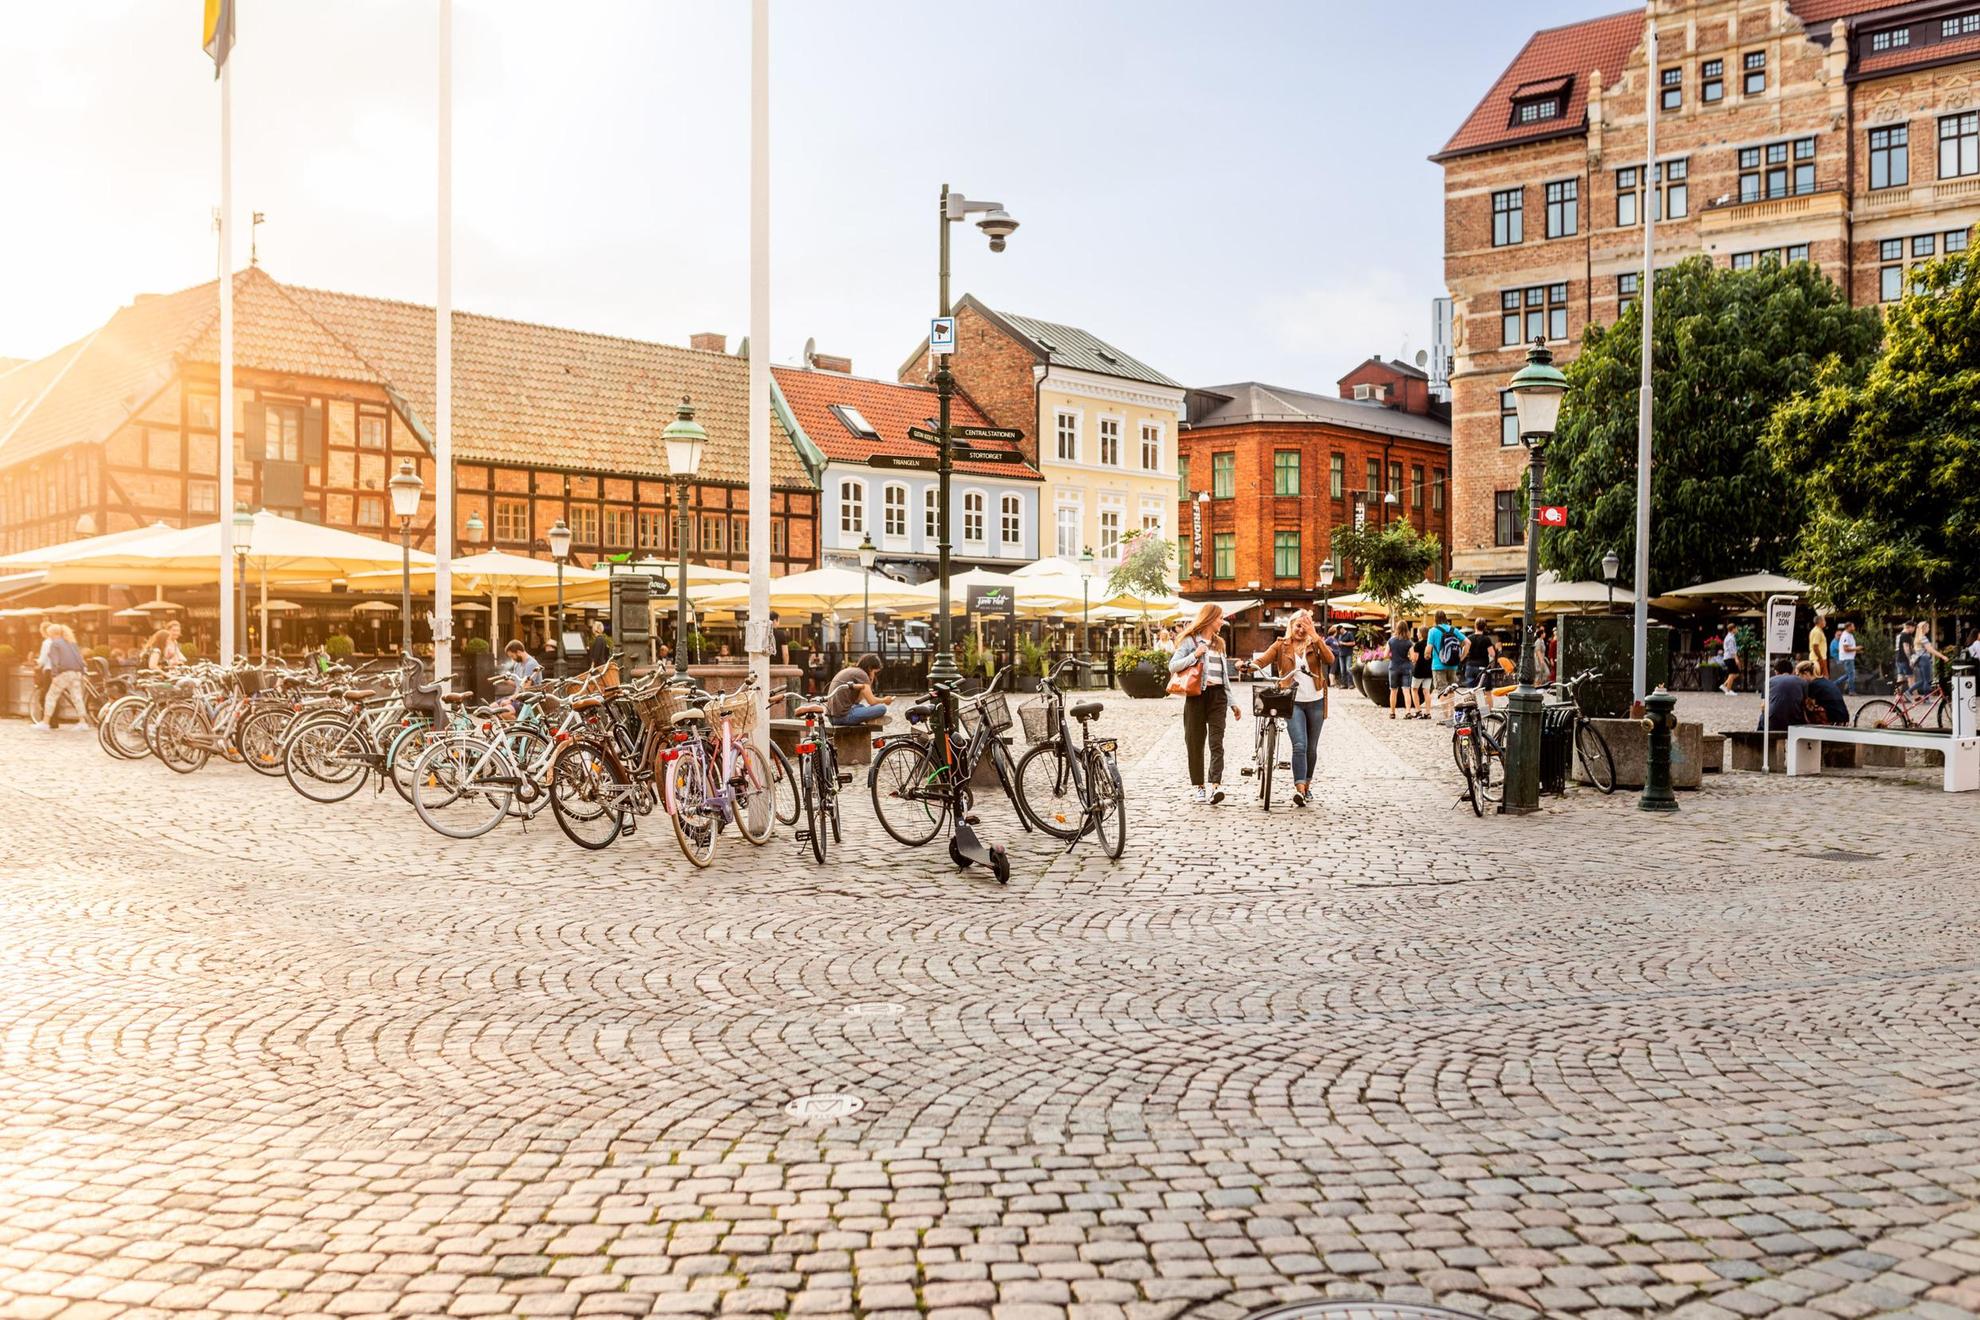 Ein Platz in einer Altstadt, Backstein- und Steinhäuser an der Seite. Straßen-Restaurants mit Sonnenschirmen. Auf dem Platz stehen Menschen, die auf Bänken sitzen, und mehrere Fahrräder sind geparkt.